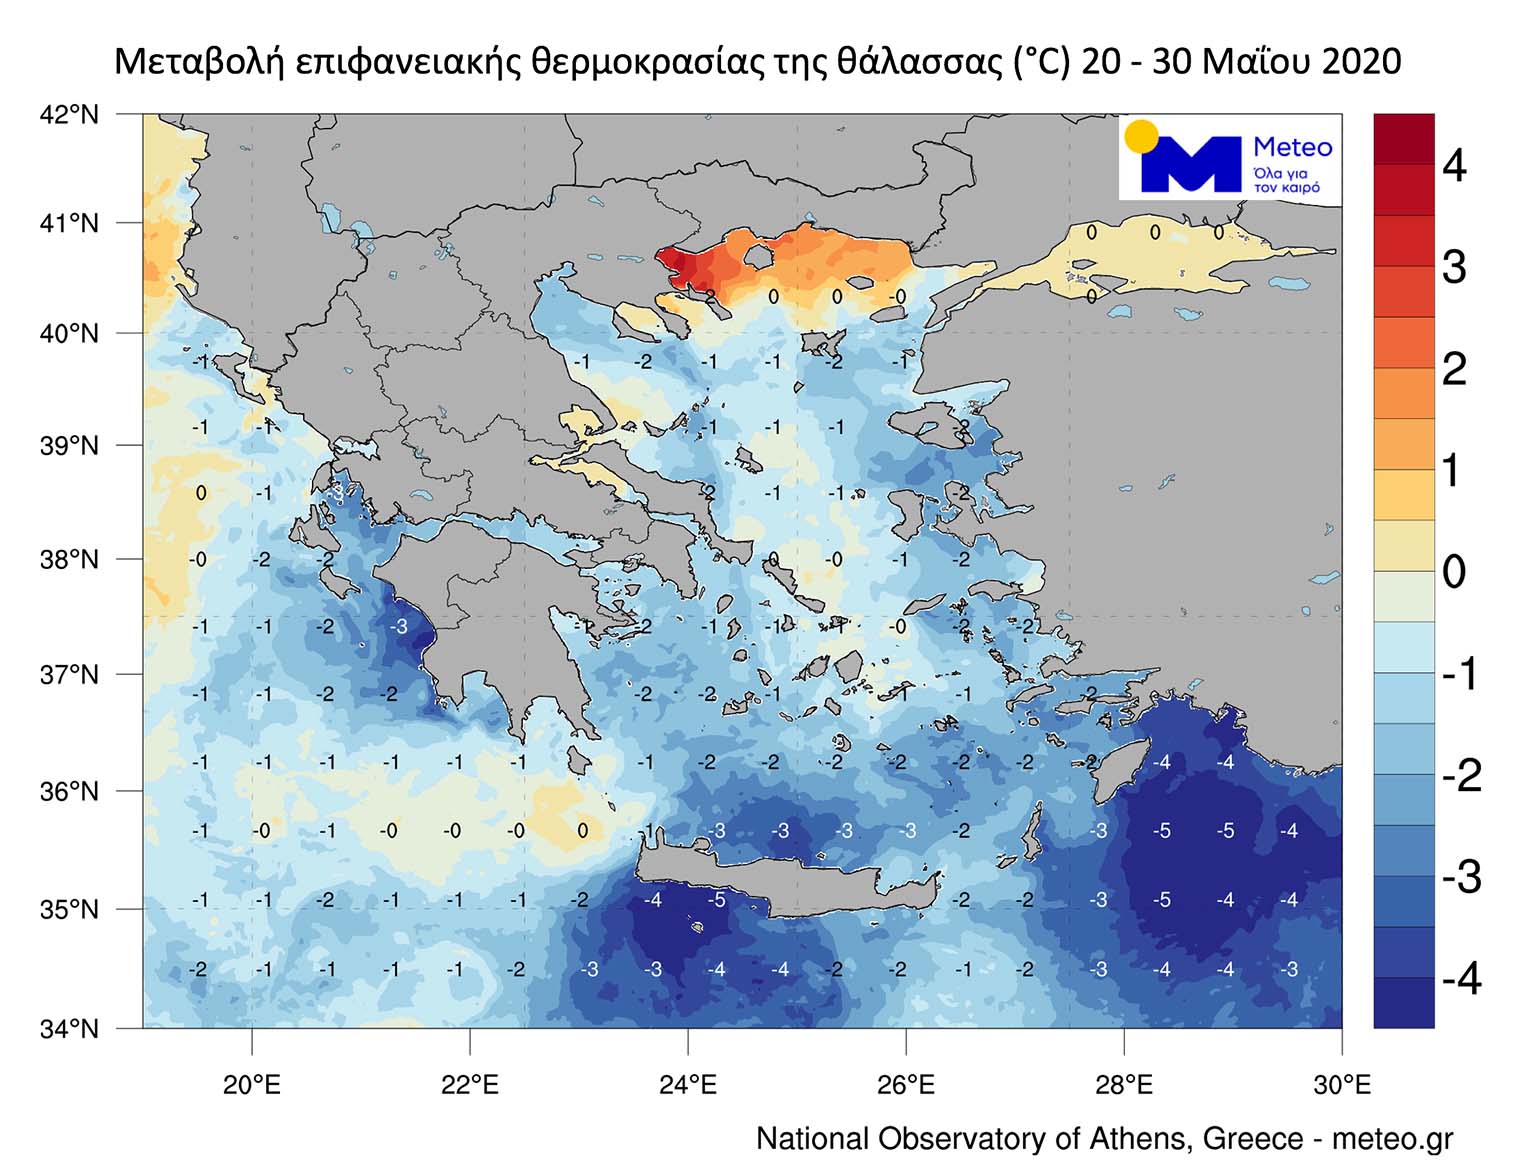 Ο χάρτης που δείχχνει τις θερμοκρασίες του νερού στην Ελλάδα, σύμφωνα με το meteo